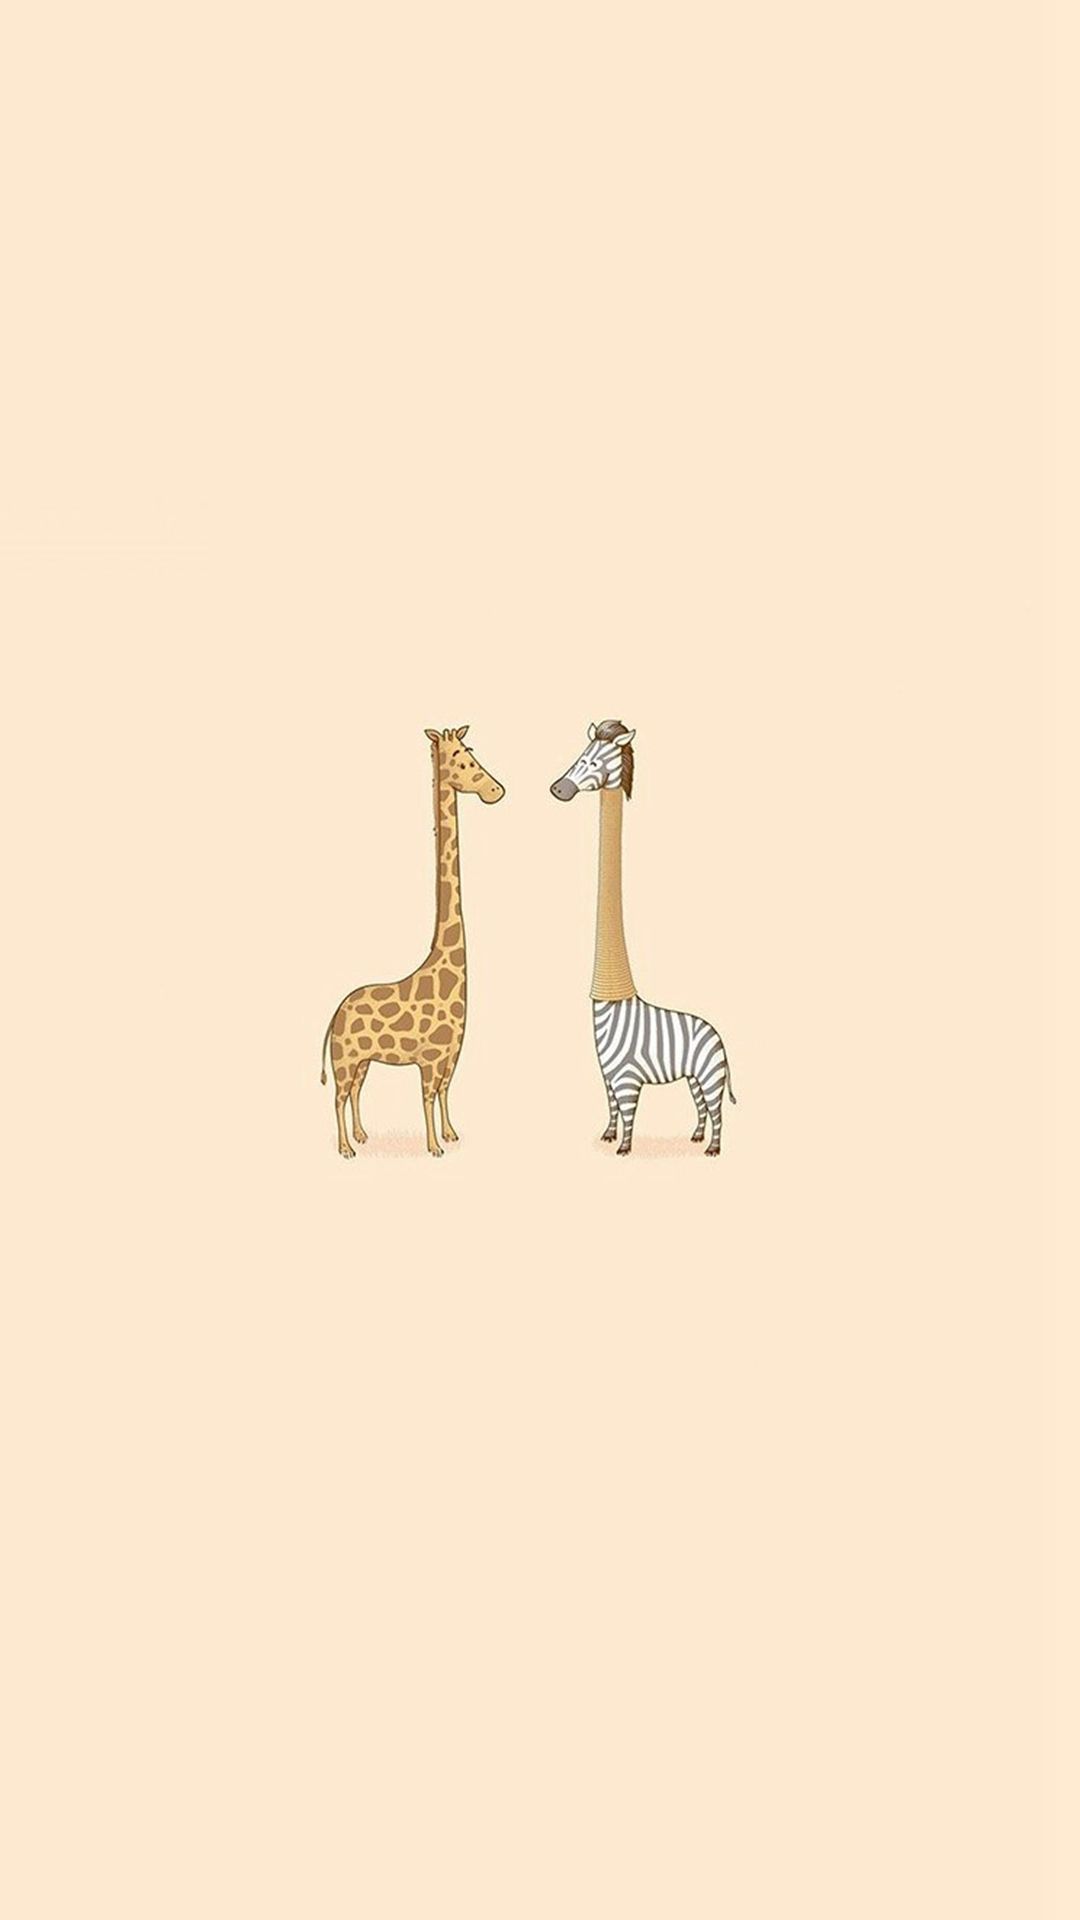 Giraffe Cute iPhone Wallpaper Free Giraffe Cute iPhone Background